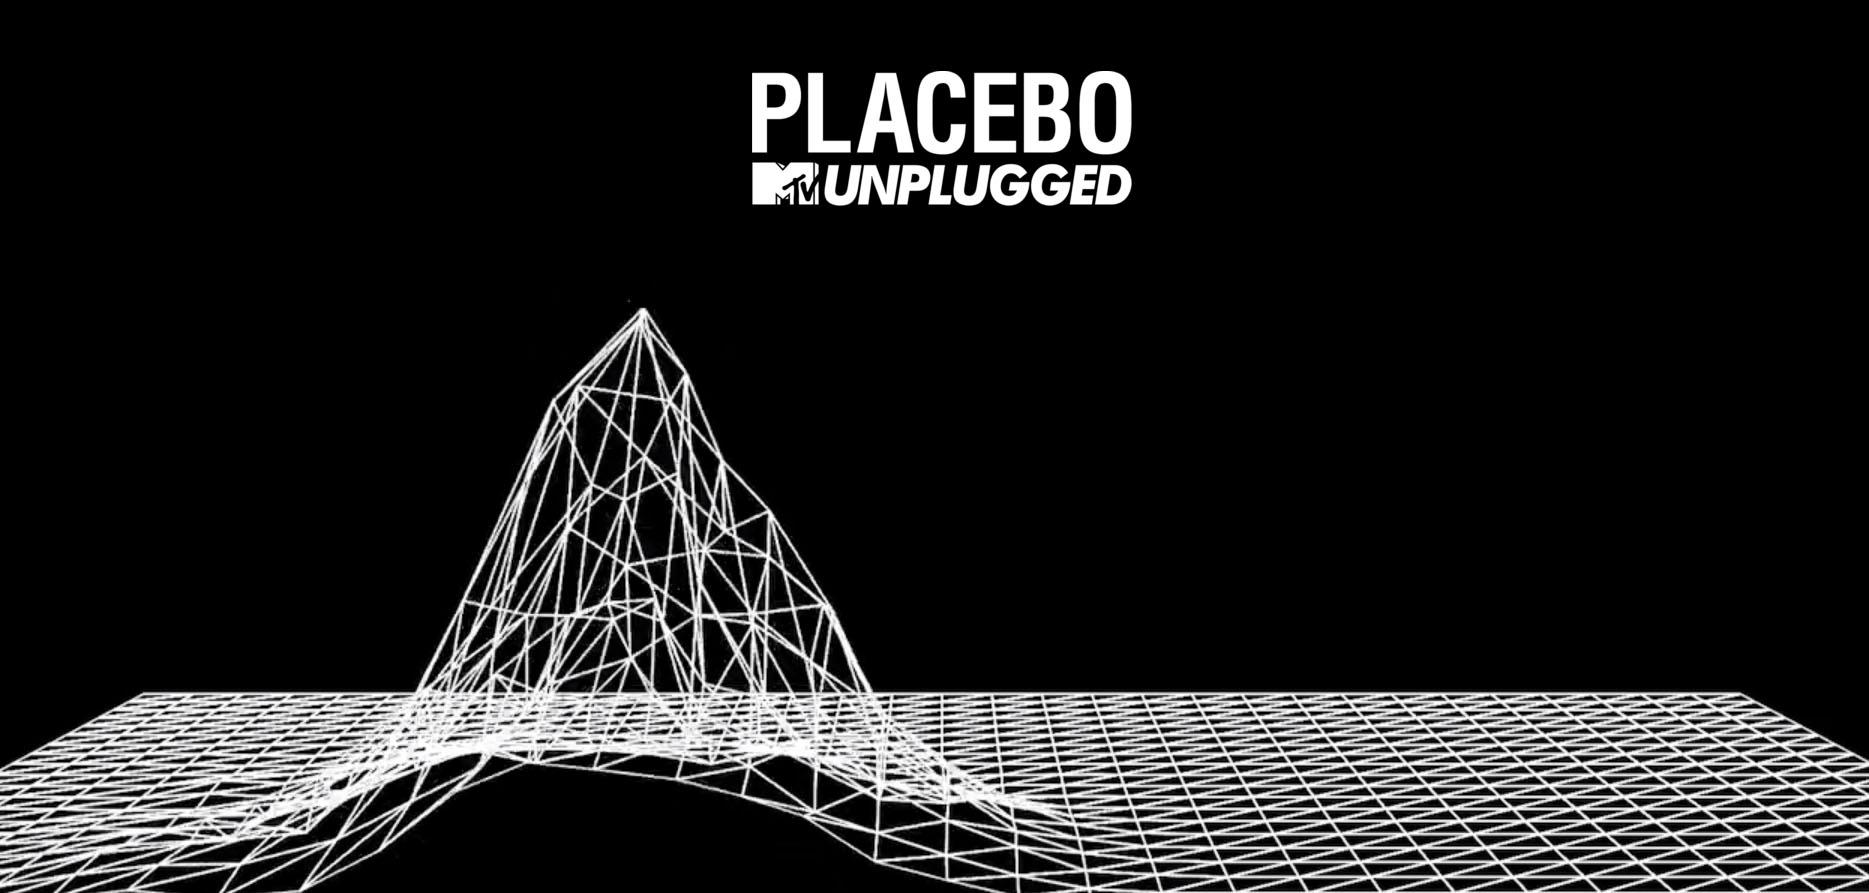 Placebo       MTV Unplugged